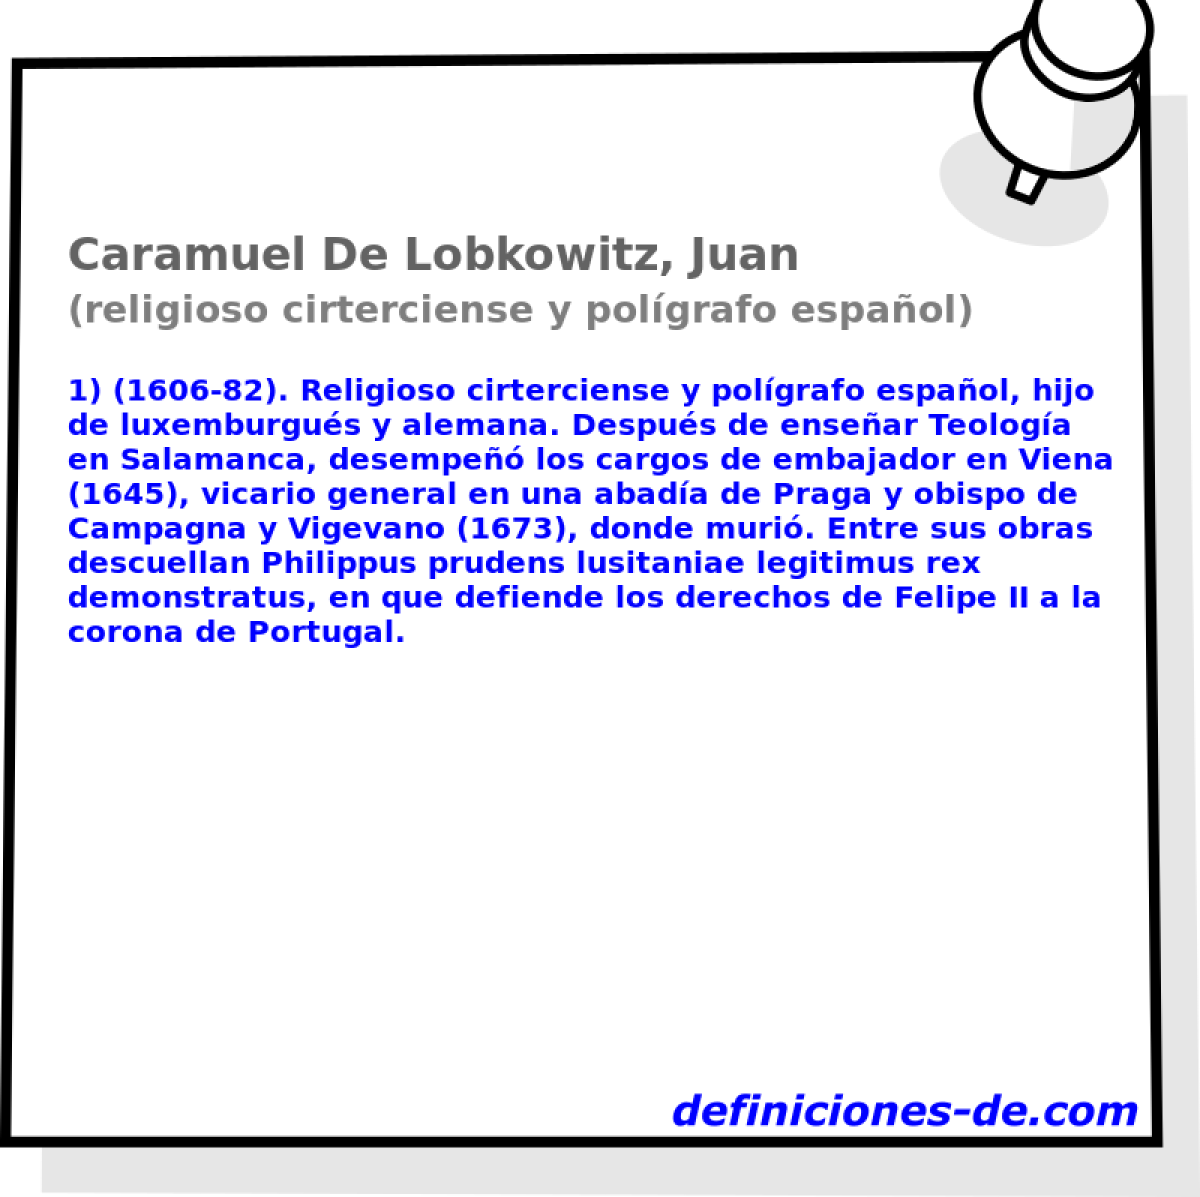 Caramuel De Lobkowitz, Juan (religioso cirterciense y polgrafo espaol)